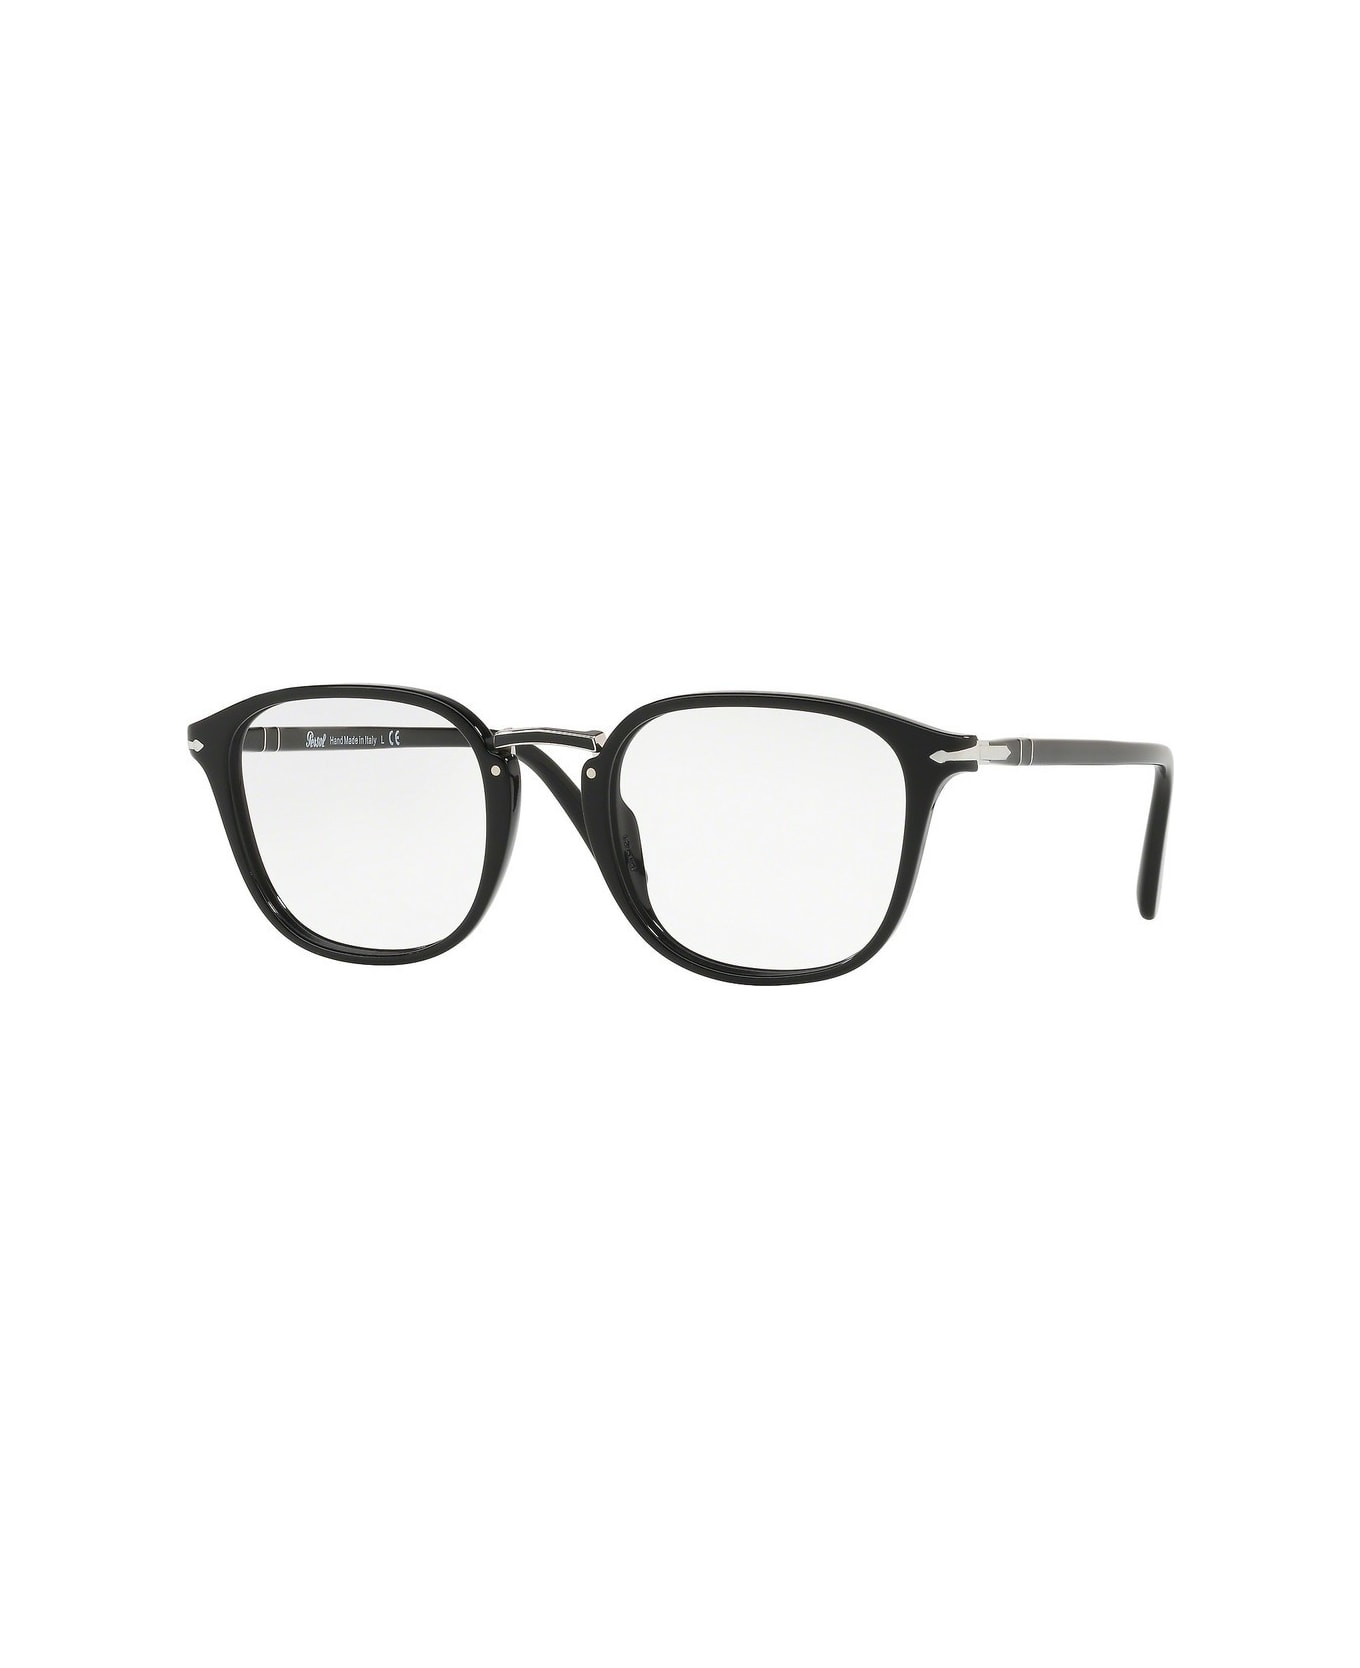 Persol Po3187v Glasses - Nero アイウェア